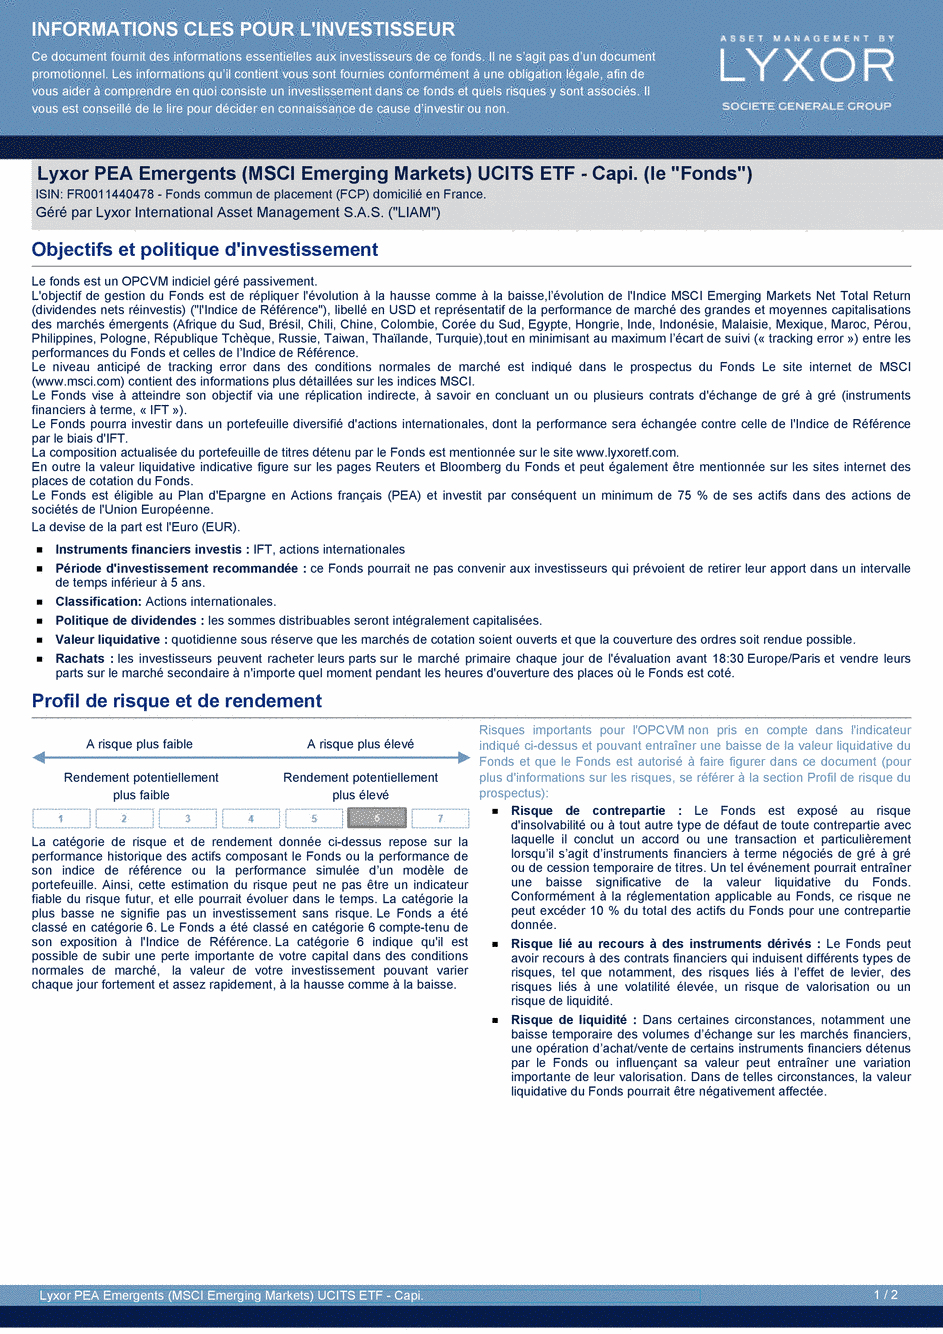 DICI Lyxor PEA Emergents (MSCI Emerging Markets) UCITS ETF - Capi. - 19/02/2021 - Français